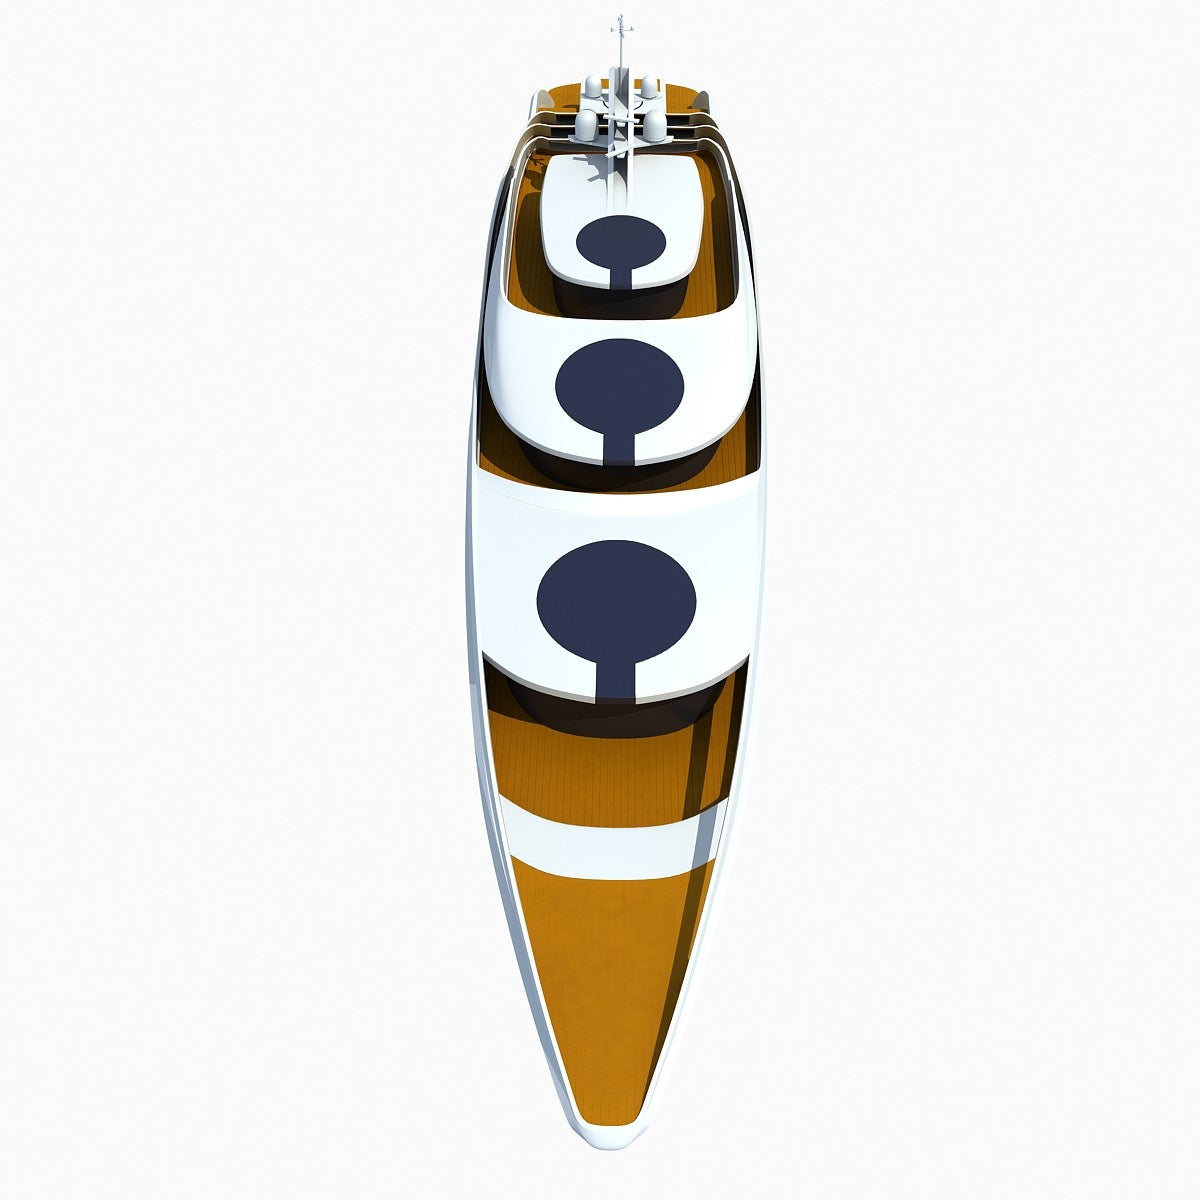 Concept Yacht 3D Model